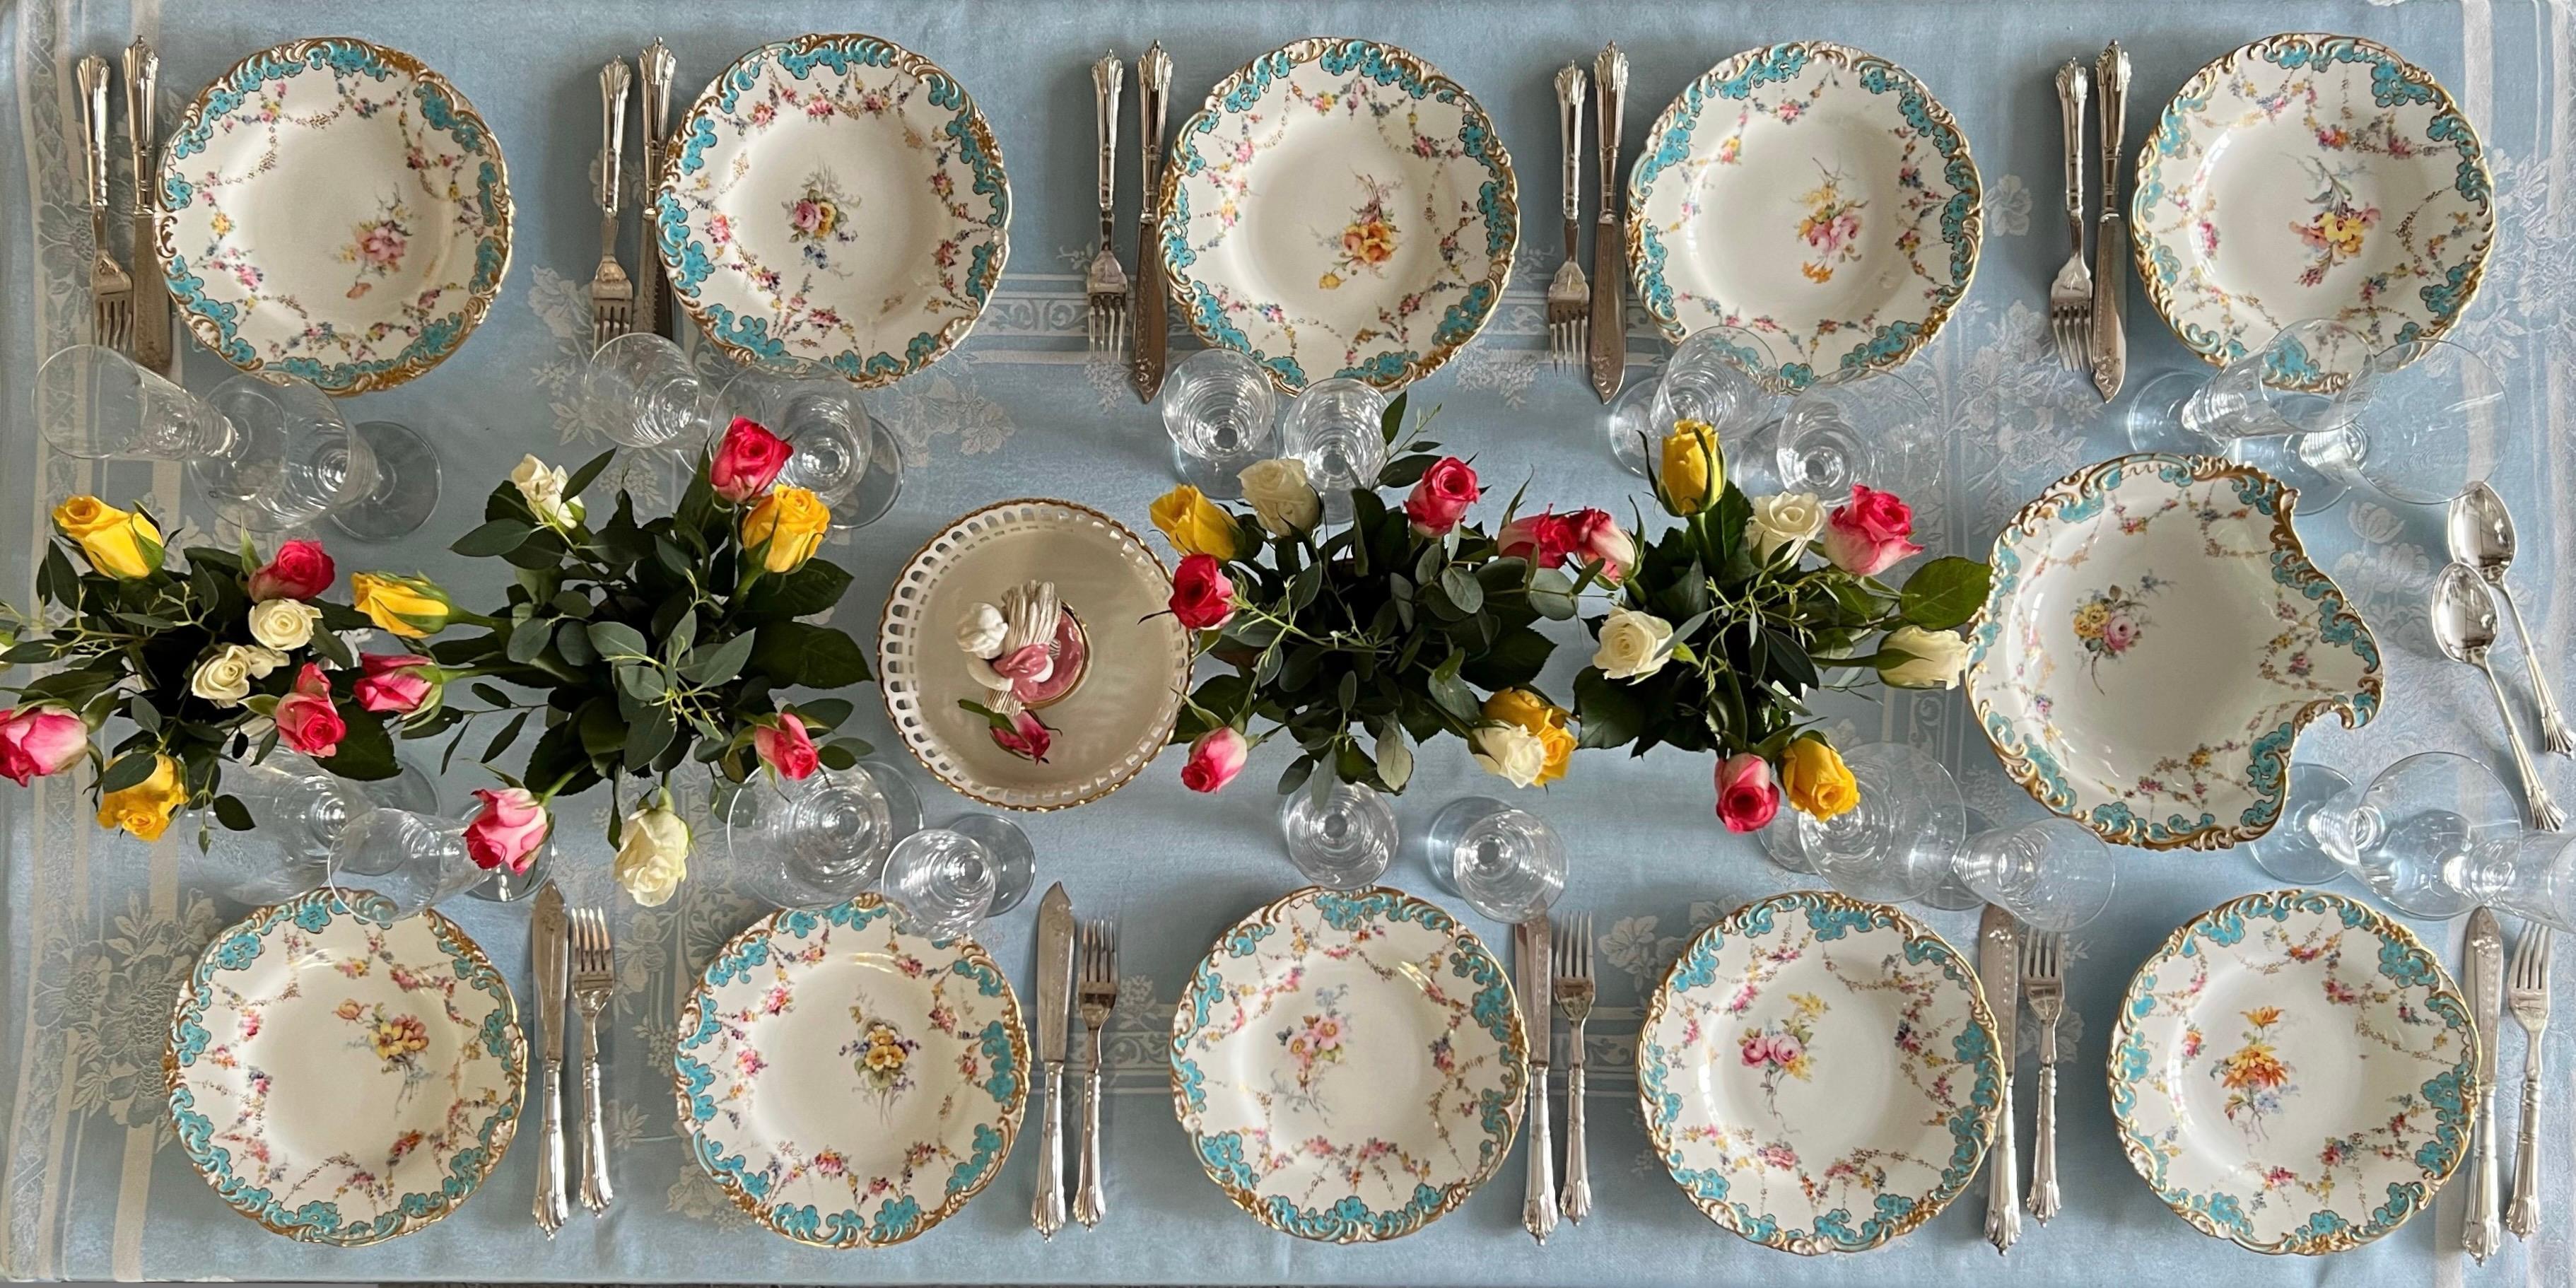 Il s'agit d'un magnifique service à dessert fabriqué par Royal Crown Derby en 1916. Le service se compose d'un plat de service et de dix assiettes, et est décoré de magnifiques bords festonnés en turquoise et doré, de délicates guirlandes de fleurs